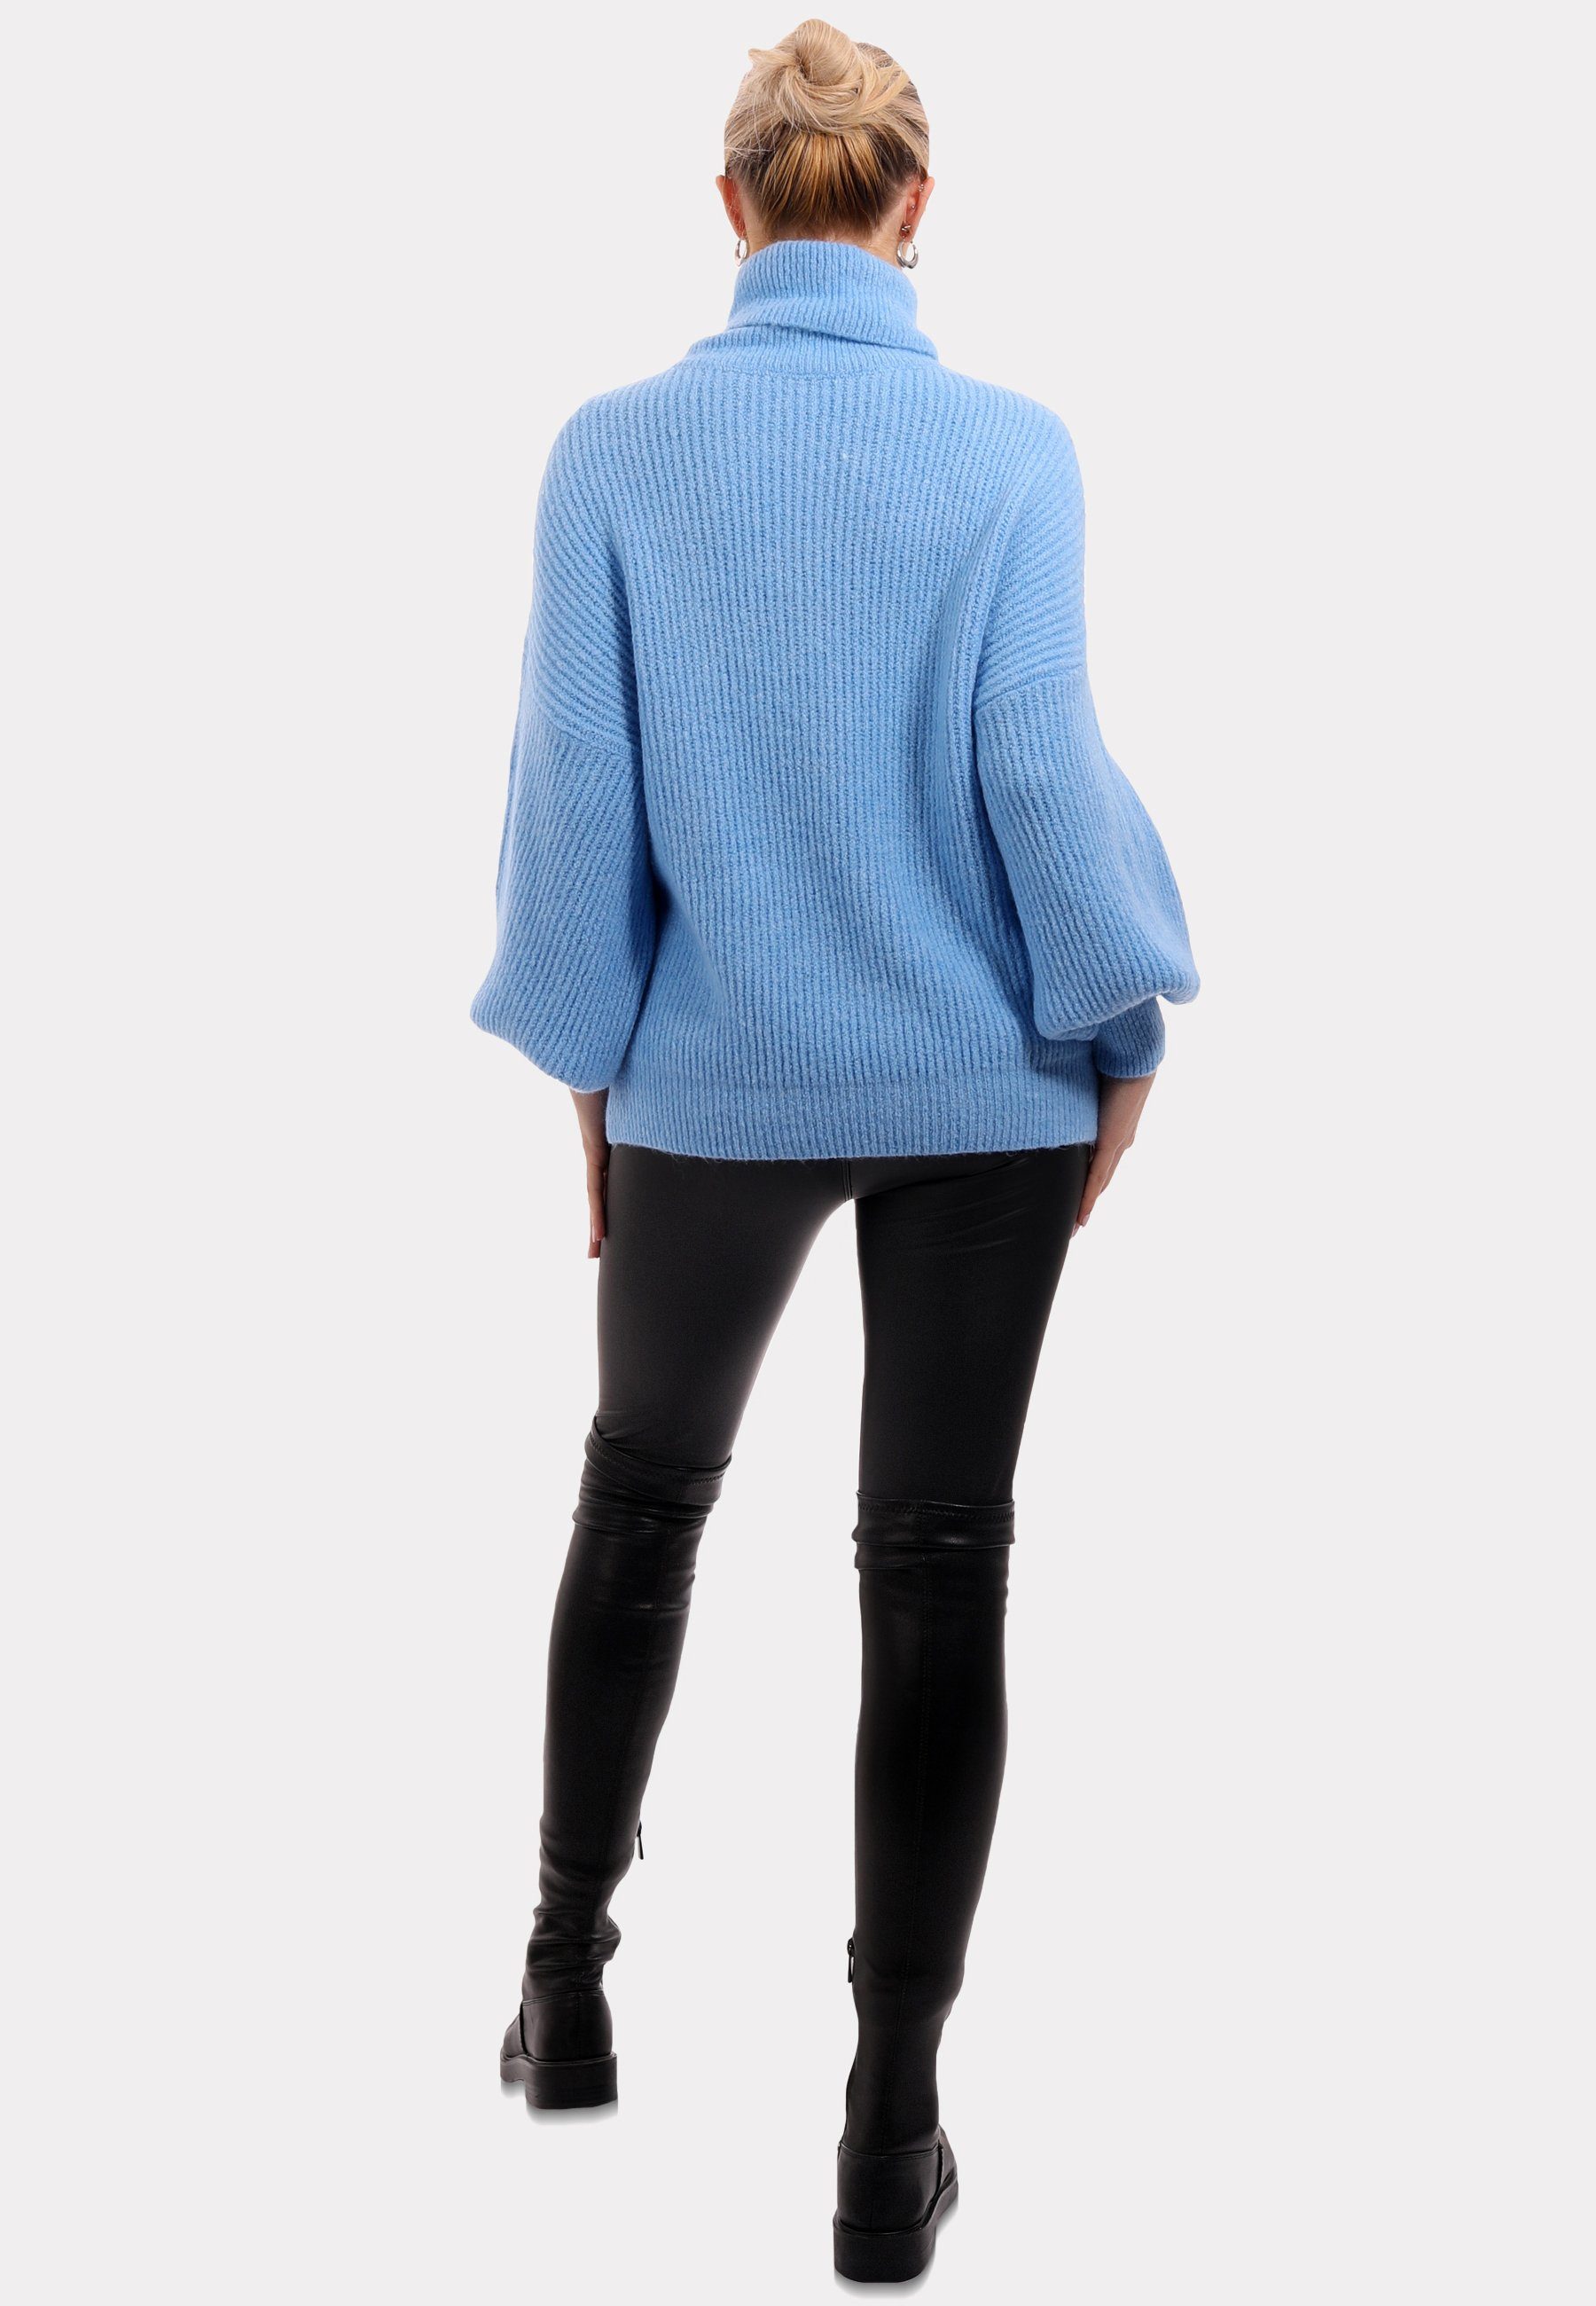 Style & YC Winter Casual Unifarbe Fashion Sweater Pullover Rollkragenpullover Blau in mit Rollkragen